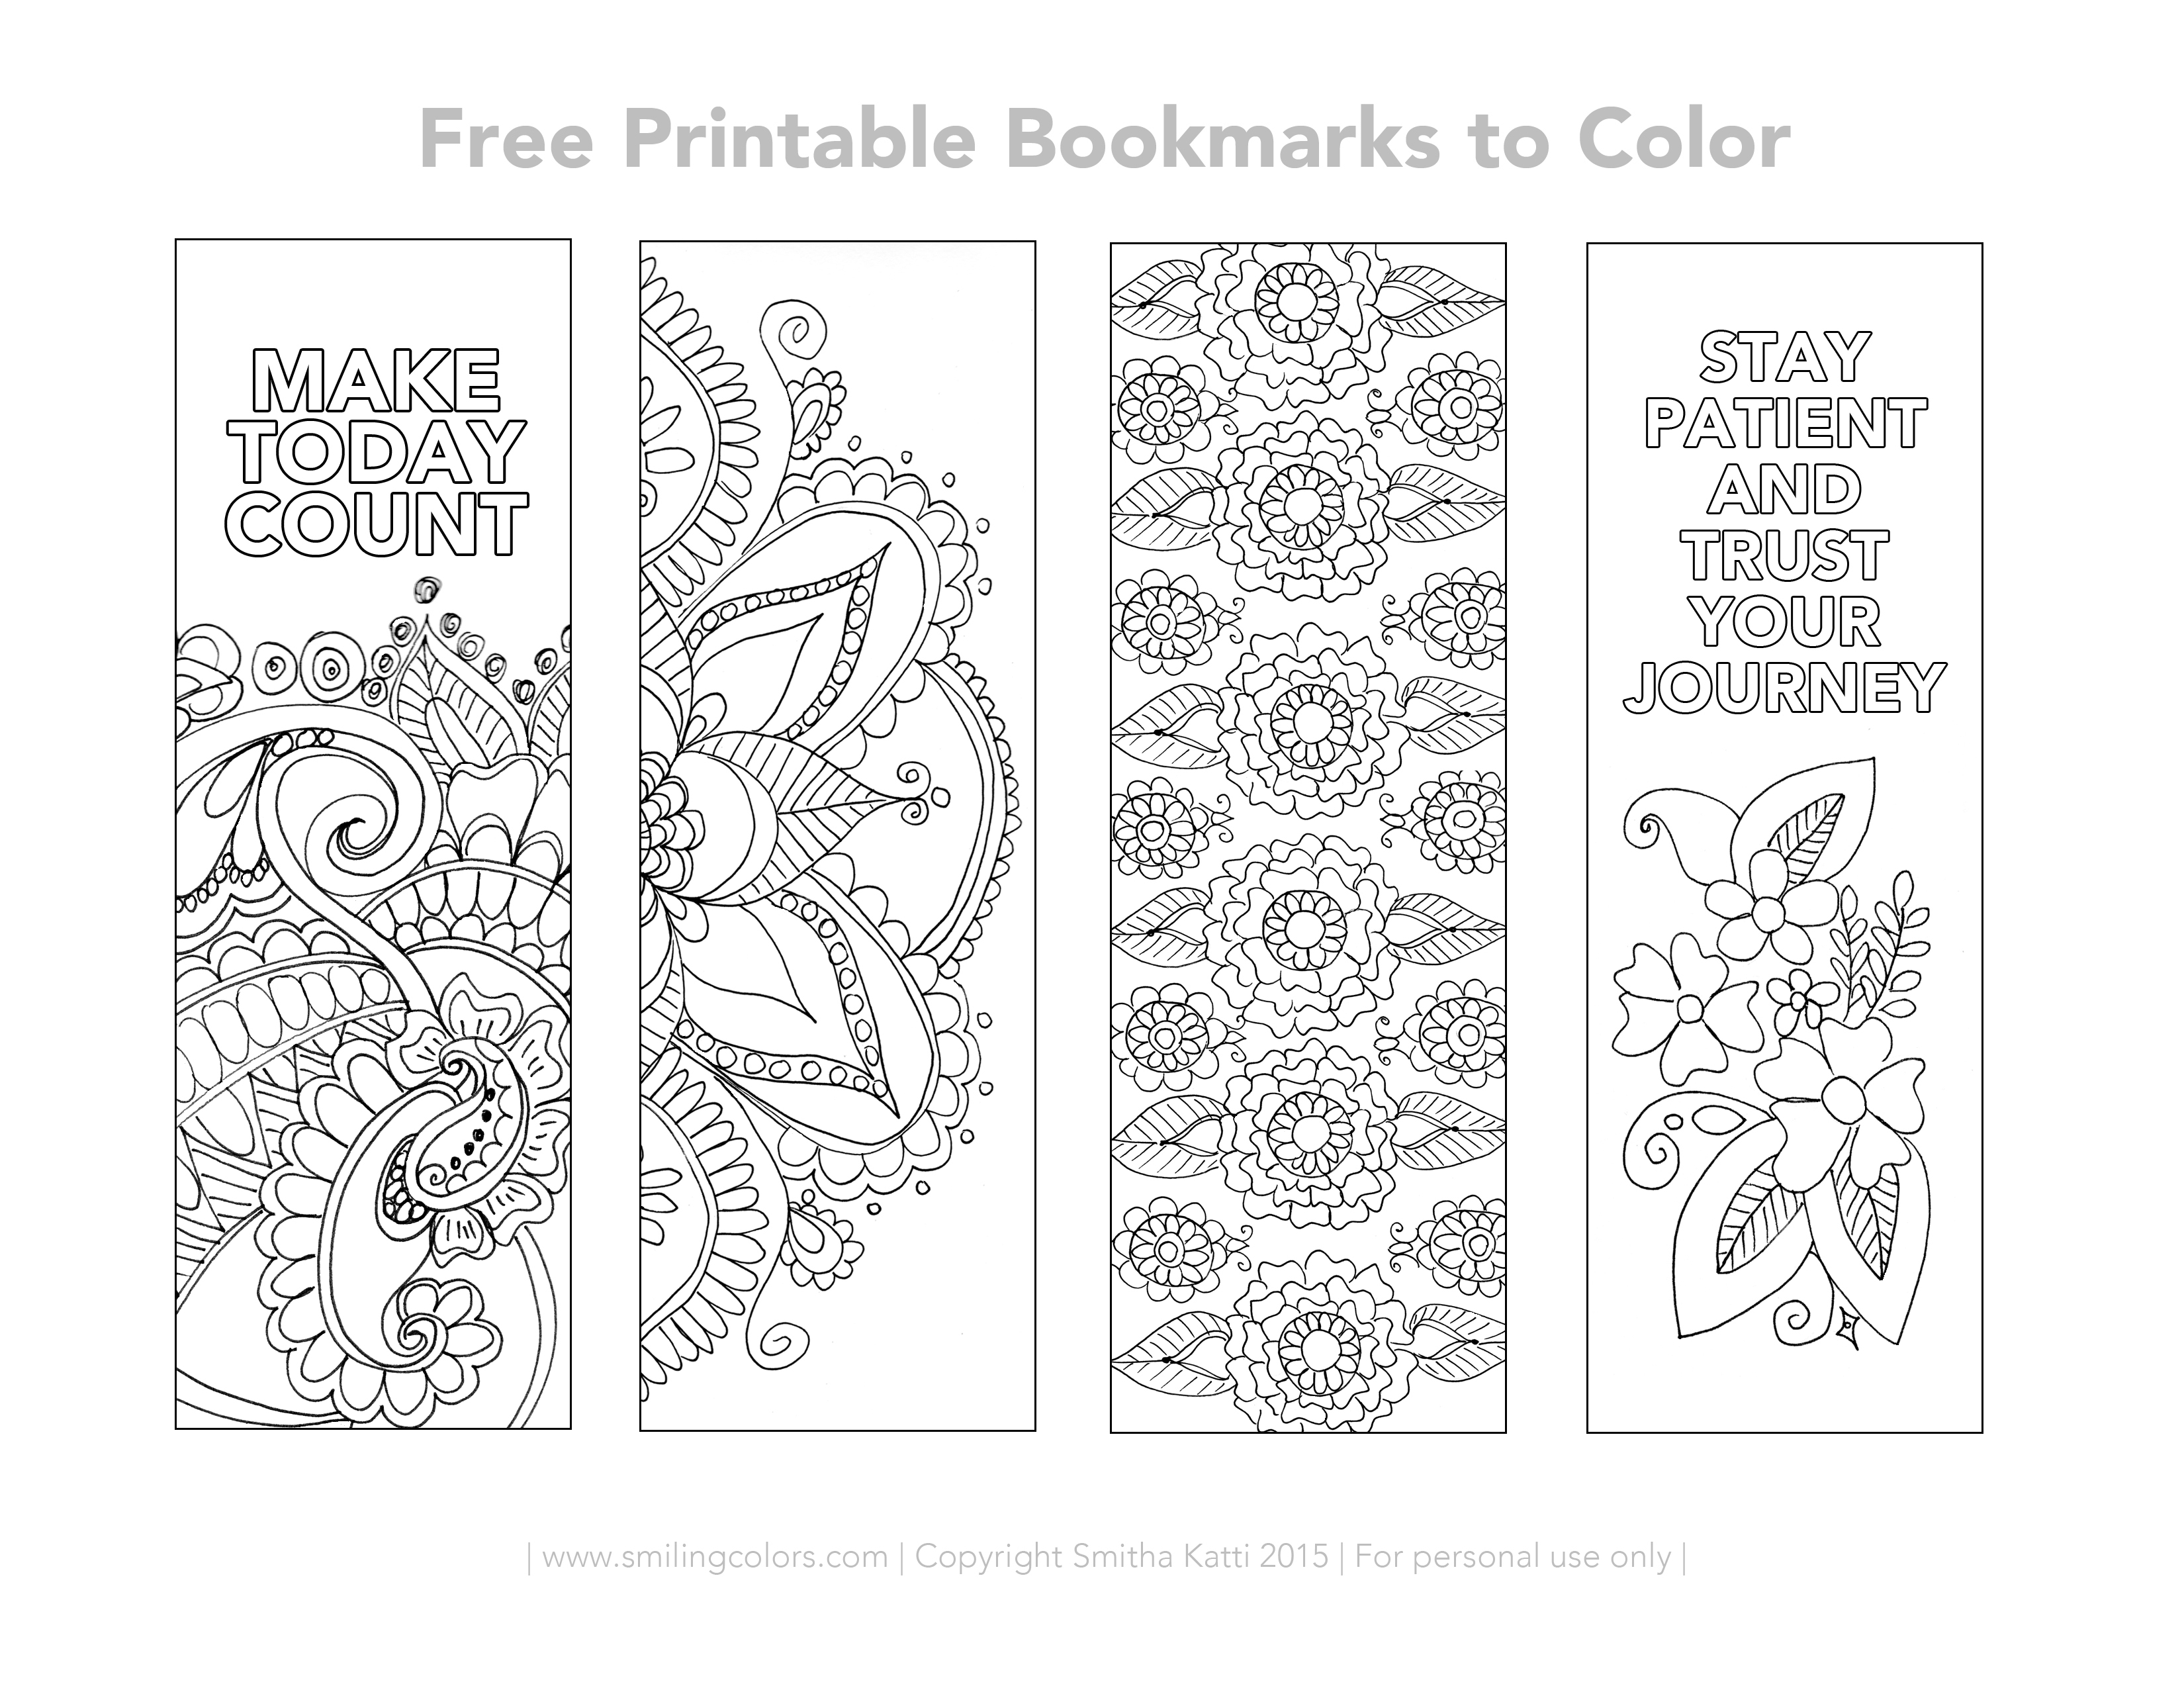 Free Printable Bookmarks To Color - Smitha Katti - Free Printable Blank Bookmarks